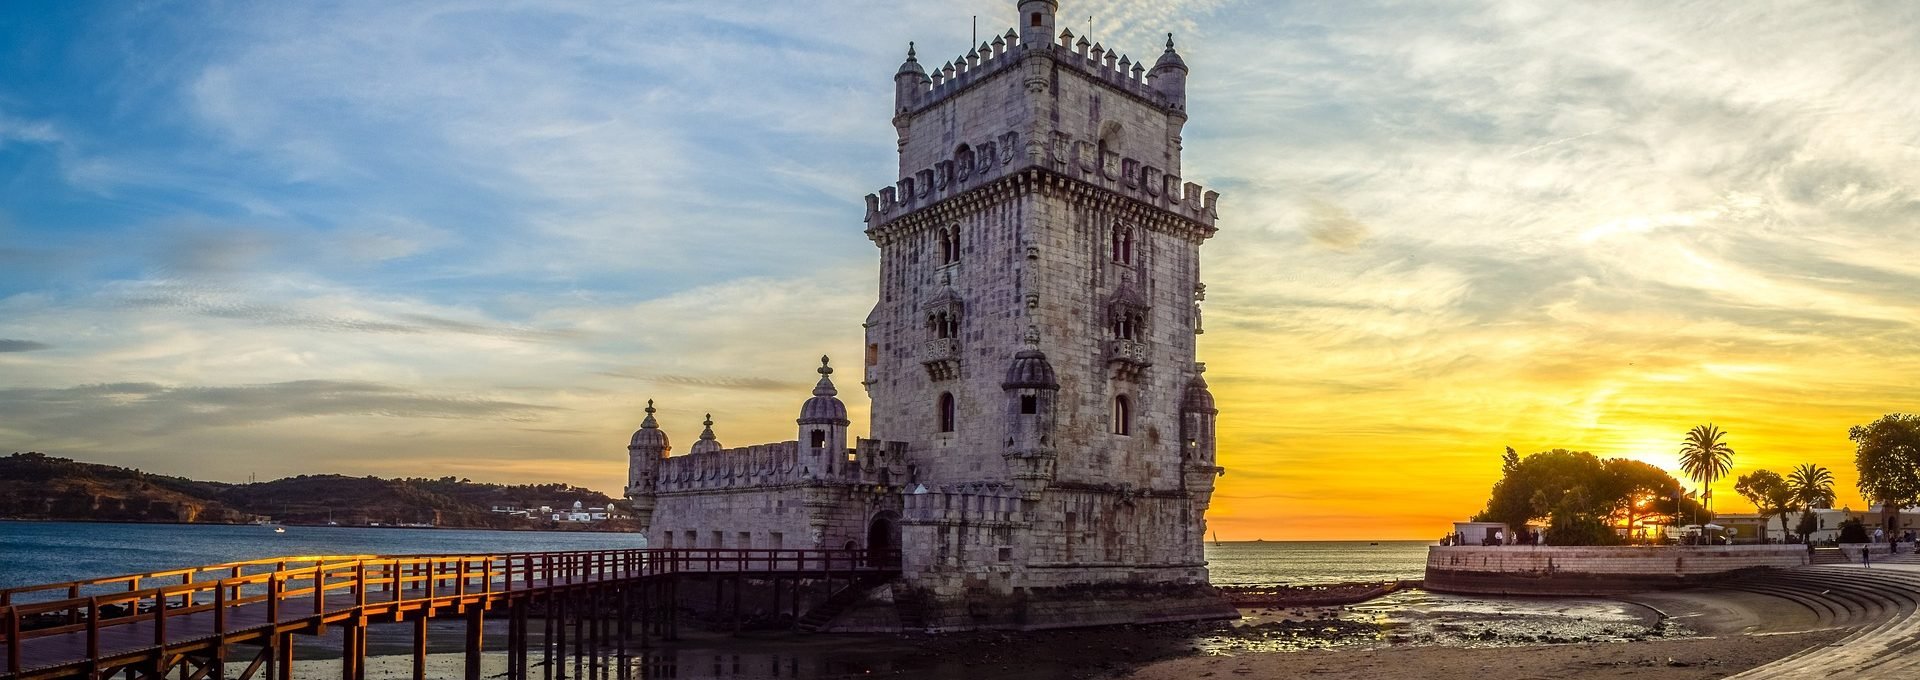 Torre de Belém, atração turística de Lisboa